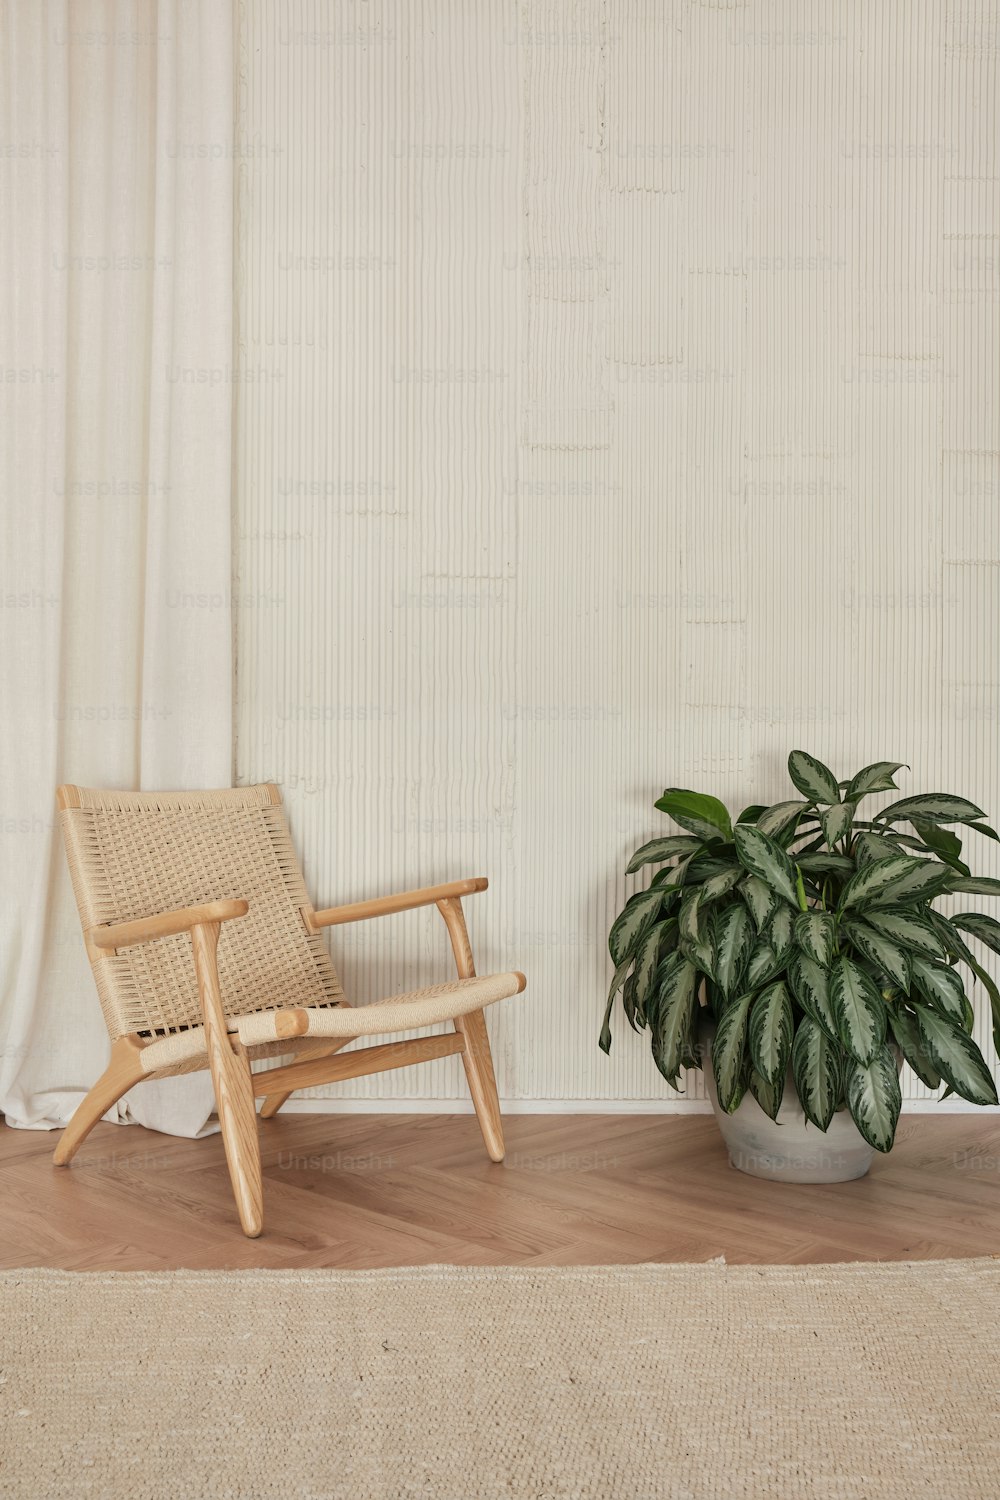 une chaise à côté d’une plante en pot sur un plancher en bois